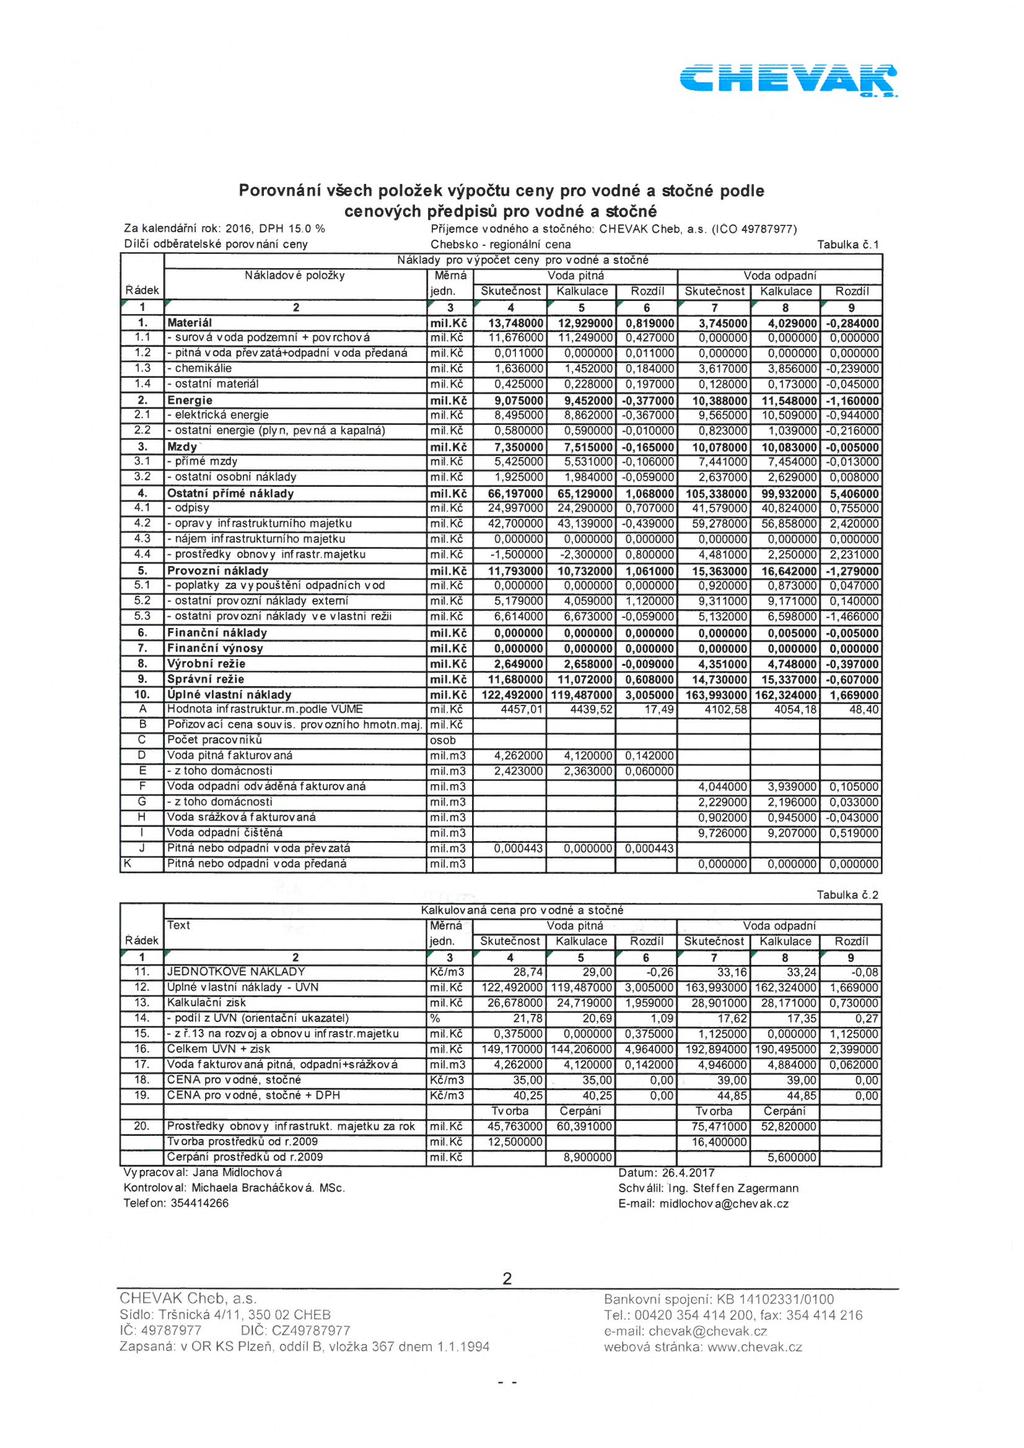 Porovnání všech p o lo žek výpočtu ceny pro vodné a stočné podle cenových předpisů pro vodné a stočné Za kalendářní rok: 206, DPH 5.